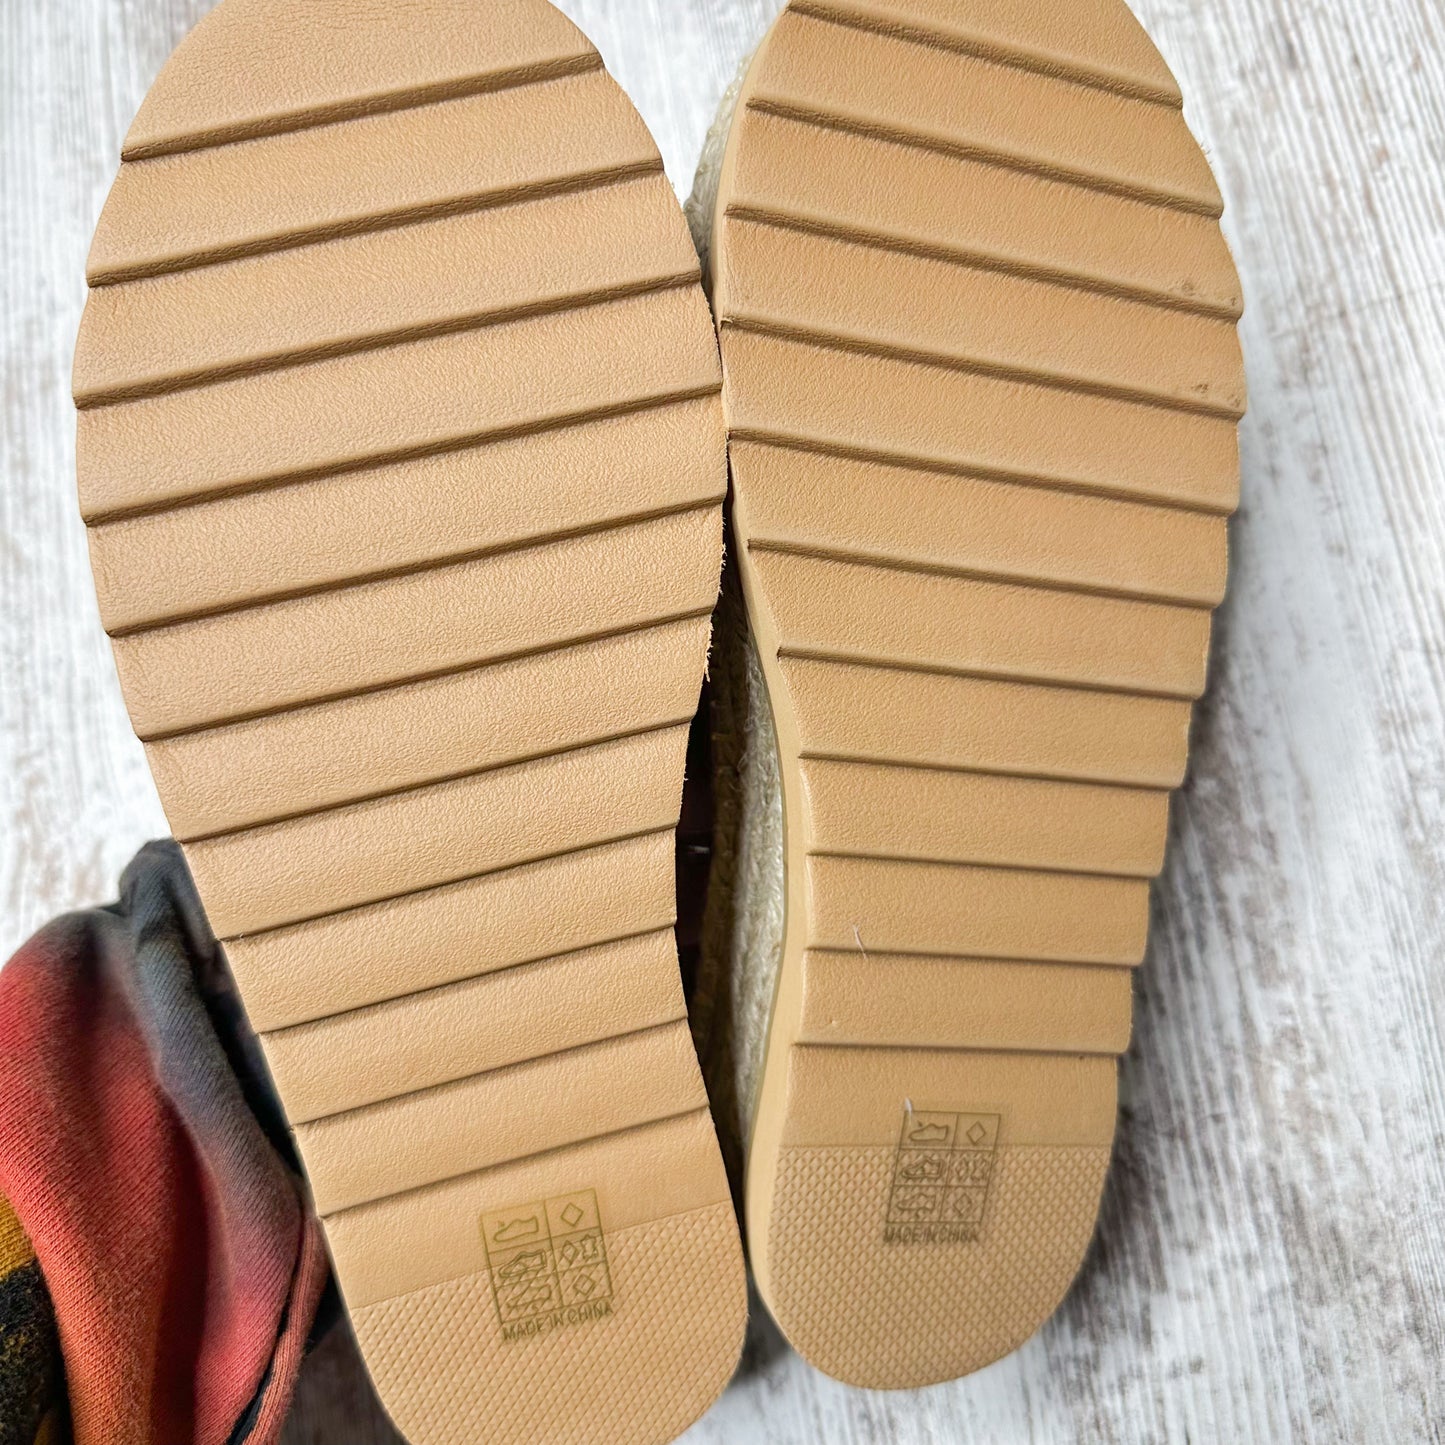 Vici Isolda Platform Espadrille Sandals in Taupe Size 8.5